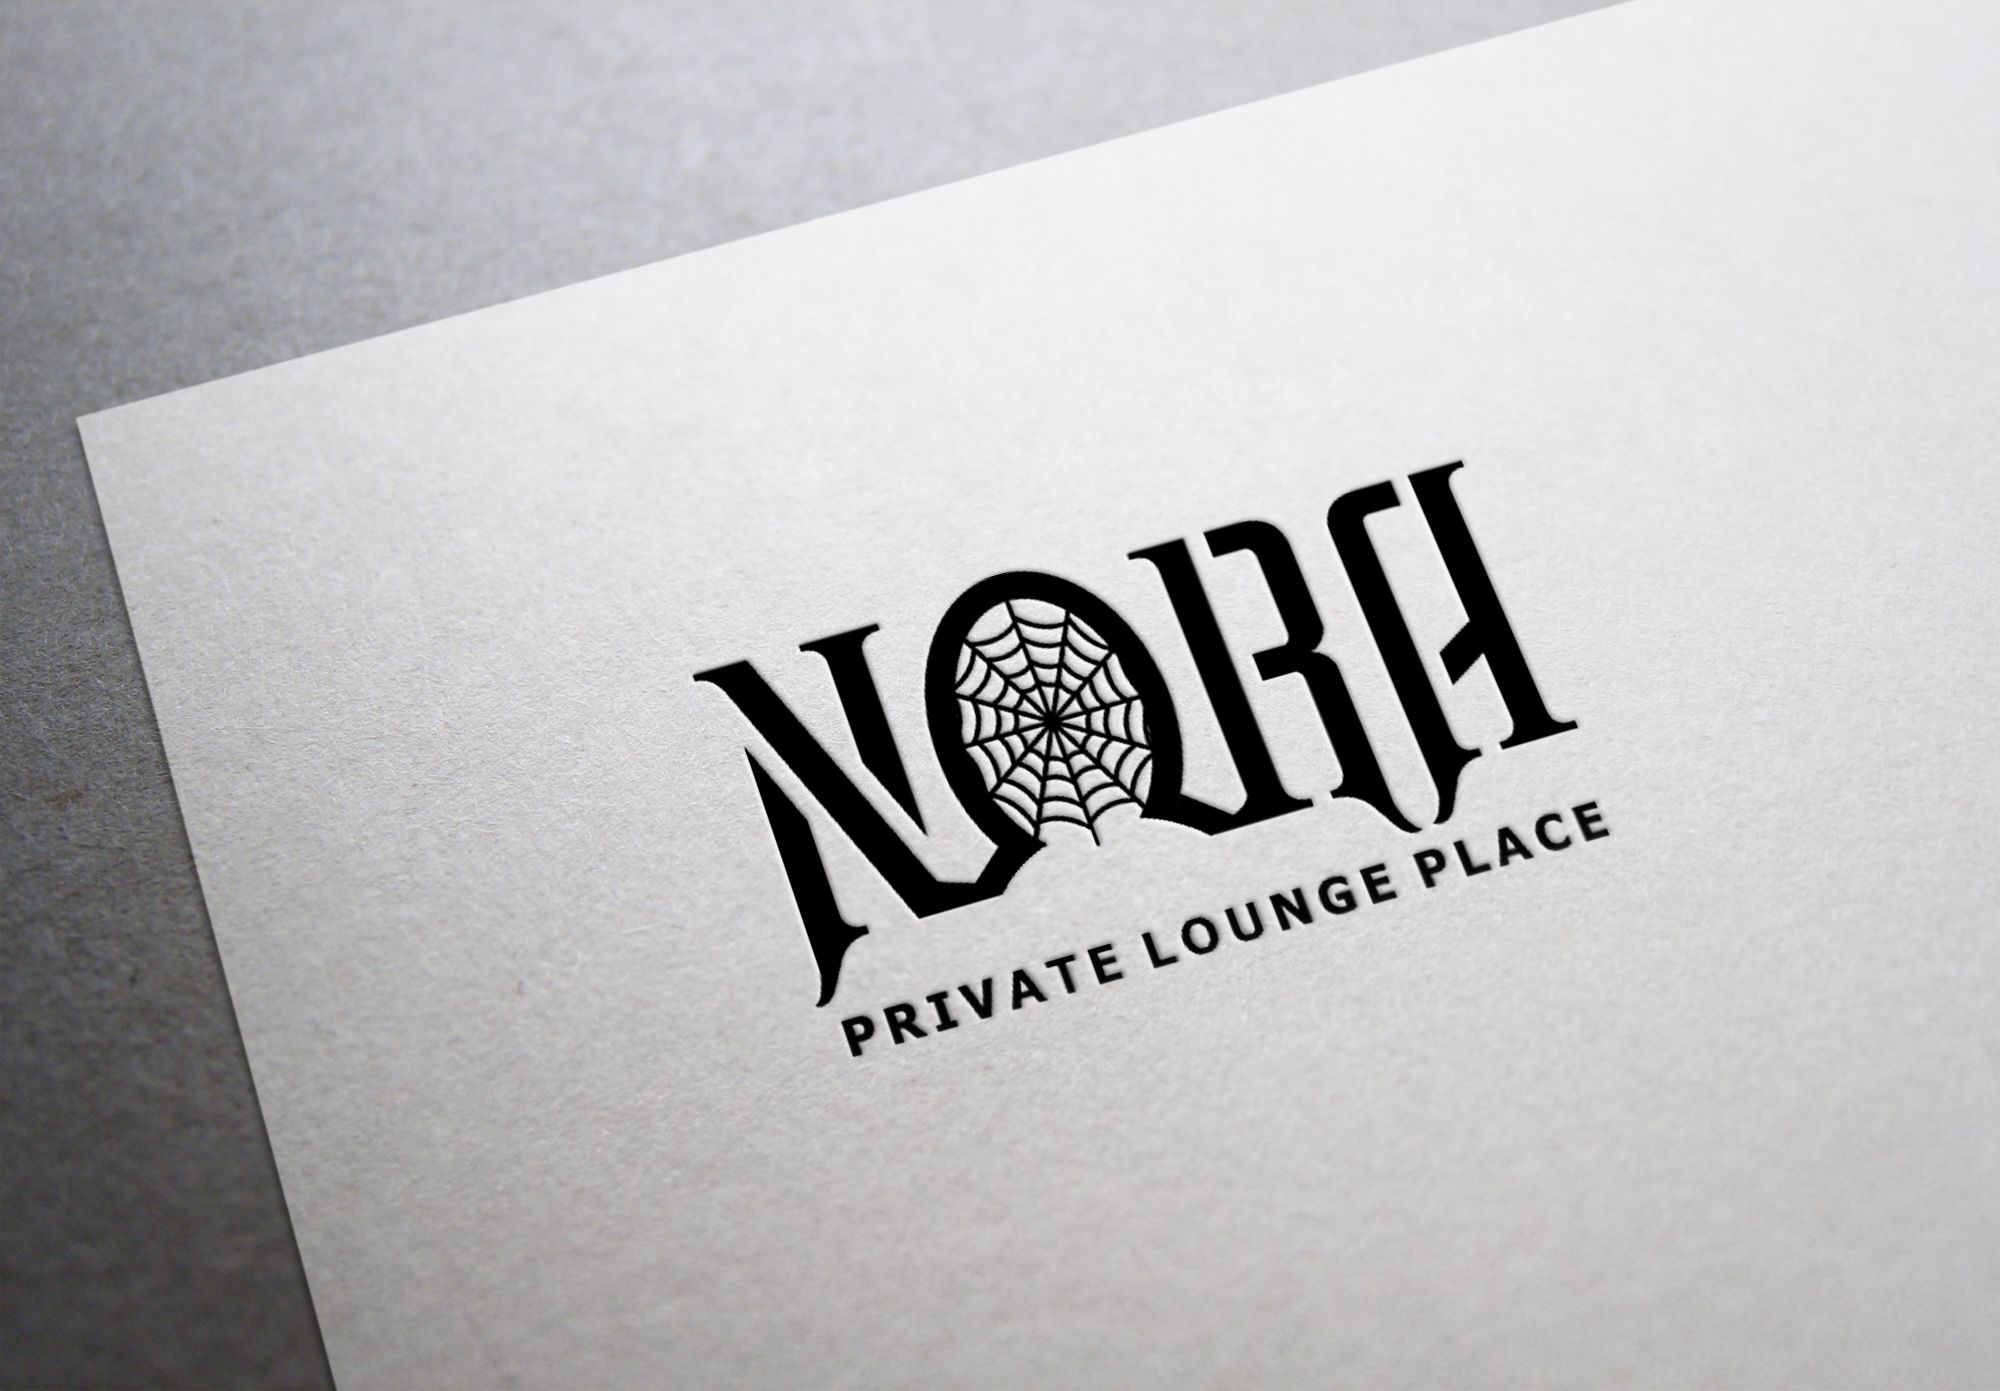 Логотип для NORA - дизайнер serz4868